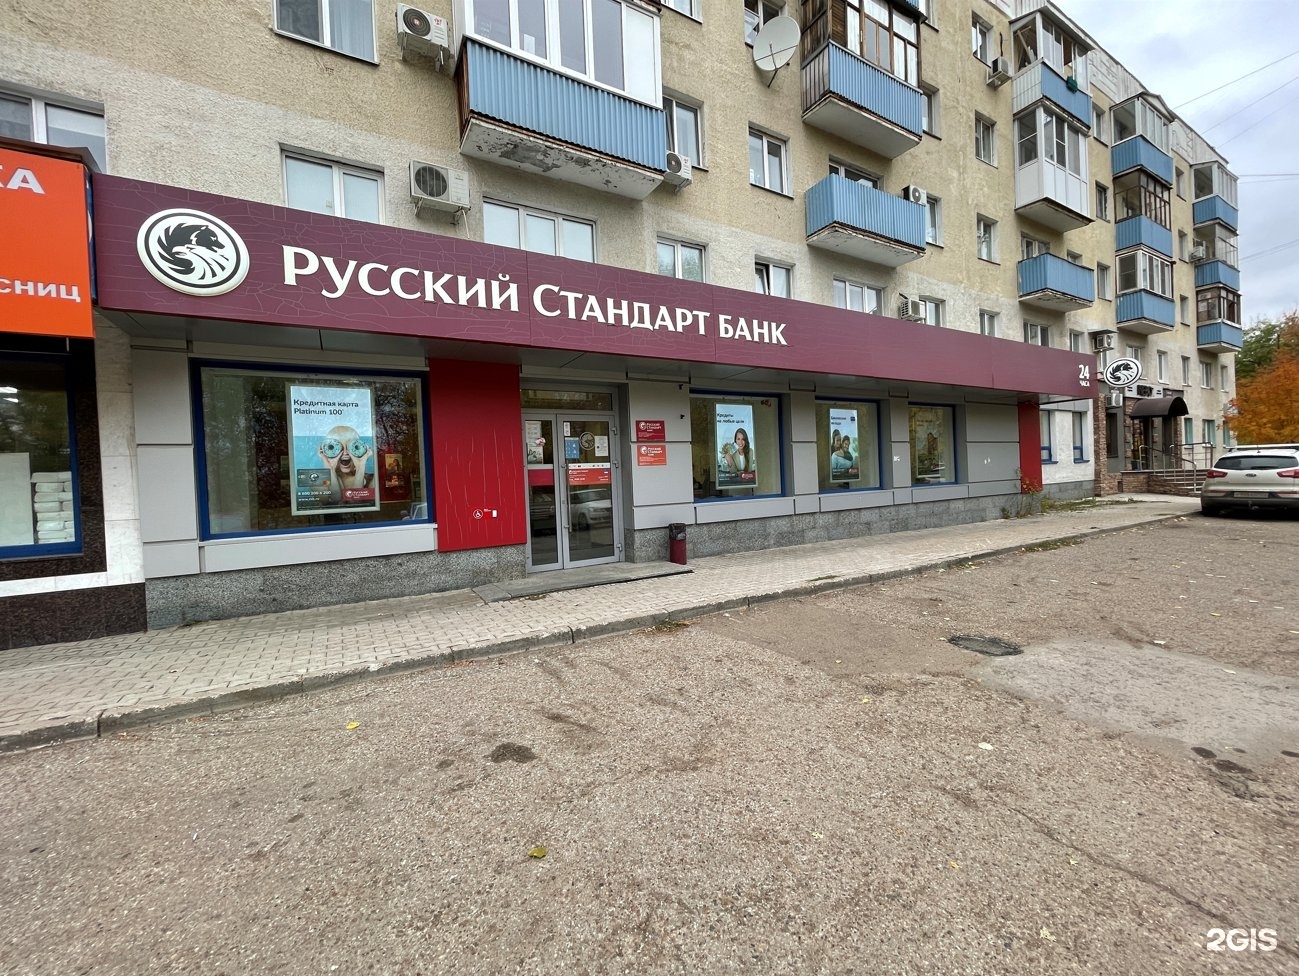 Банк русский стандарт проспект Вернадского 105 телефон